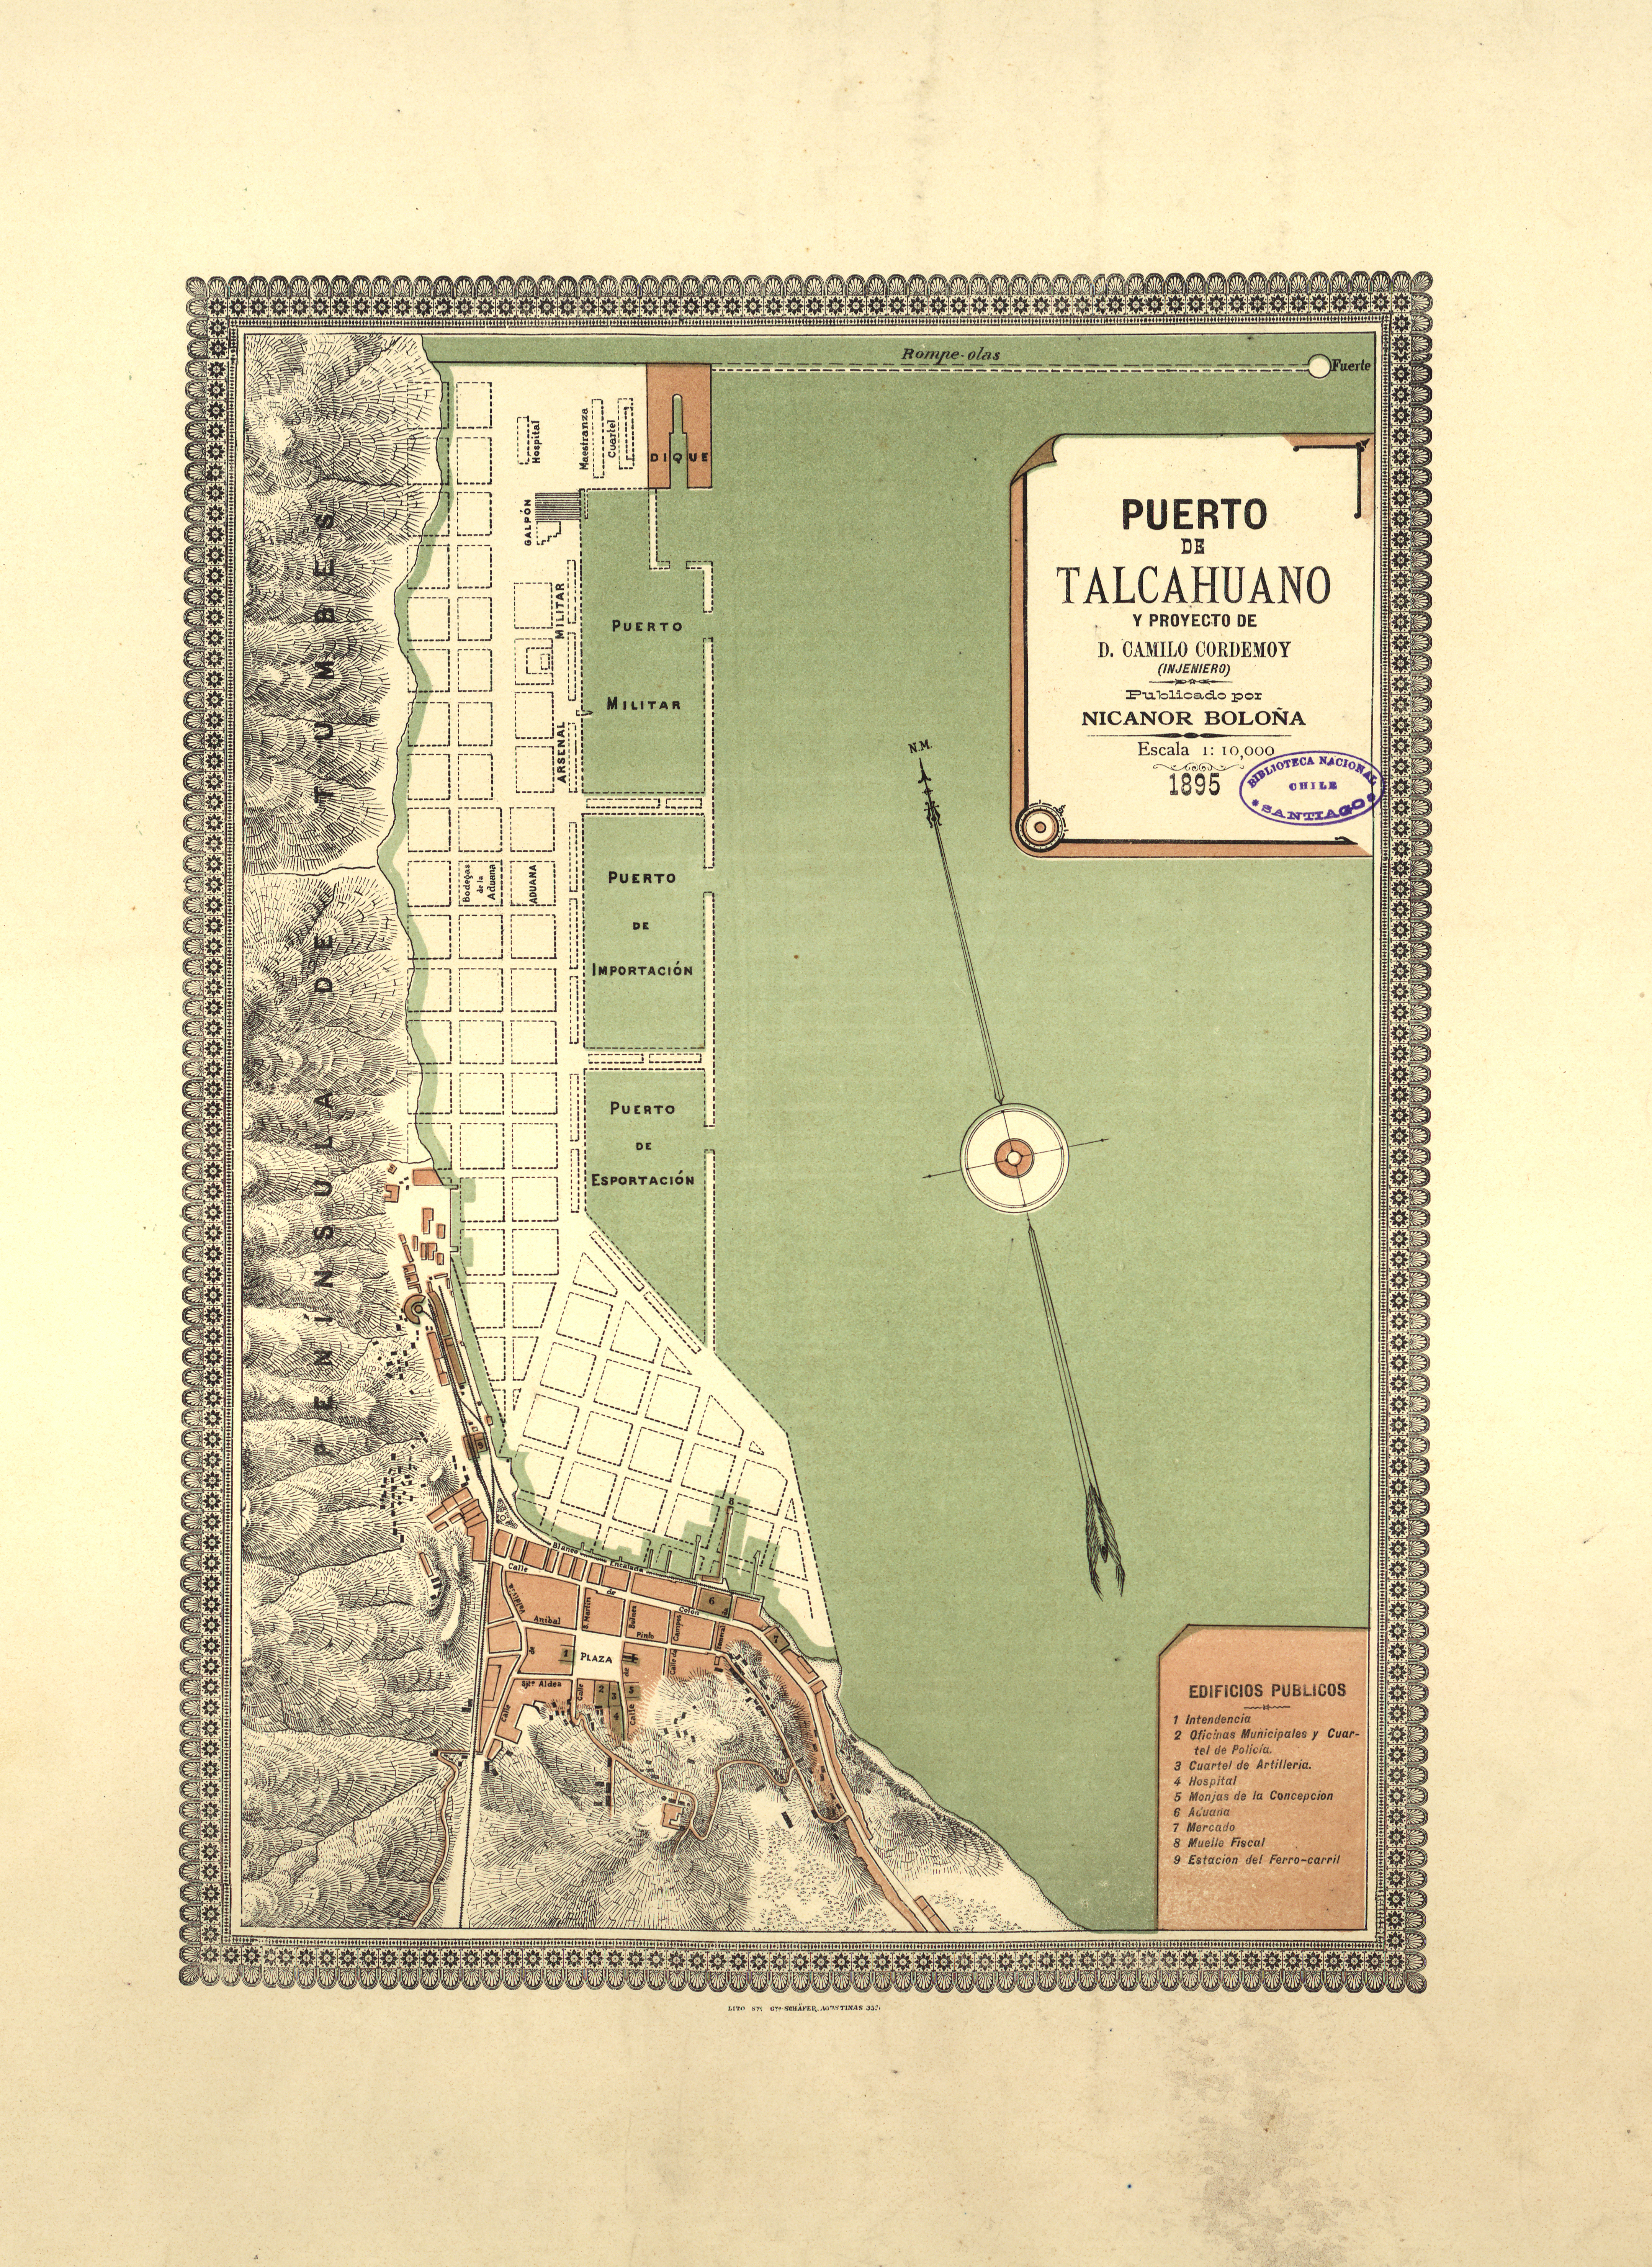 Puerto de Talcahuano y proyecto de Camilo Cordemoy, 1895